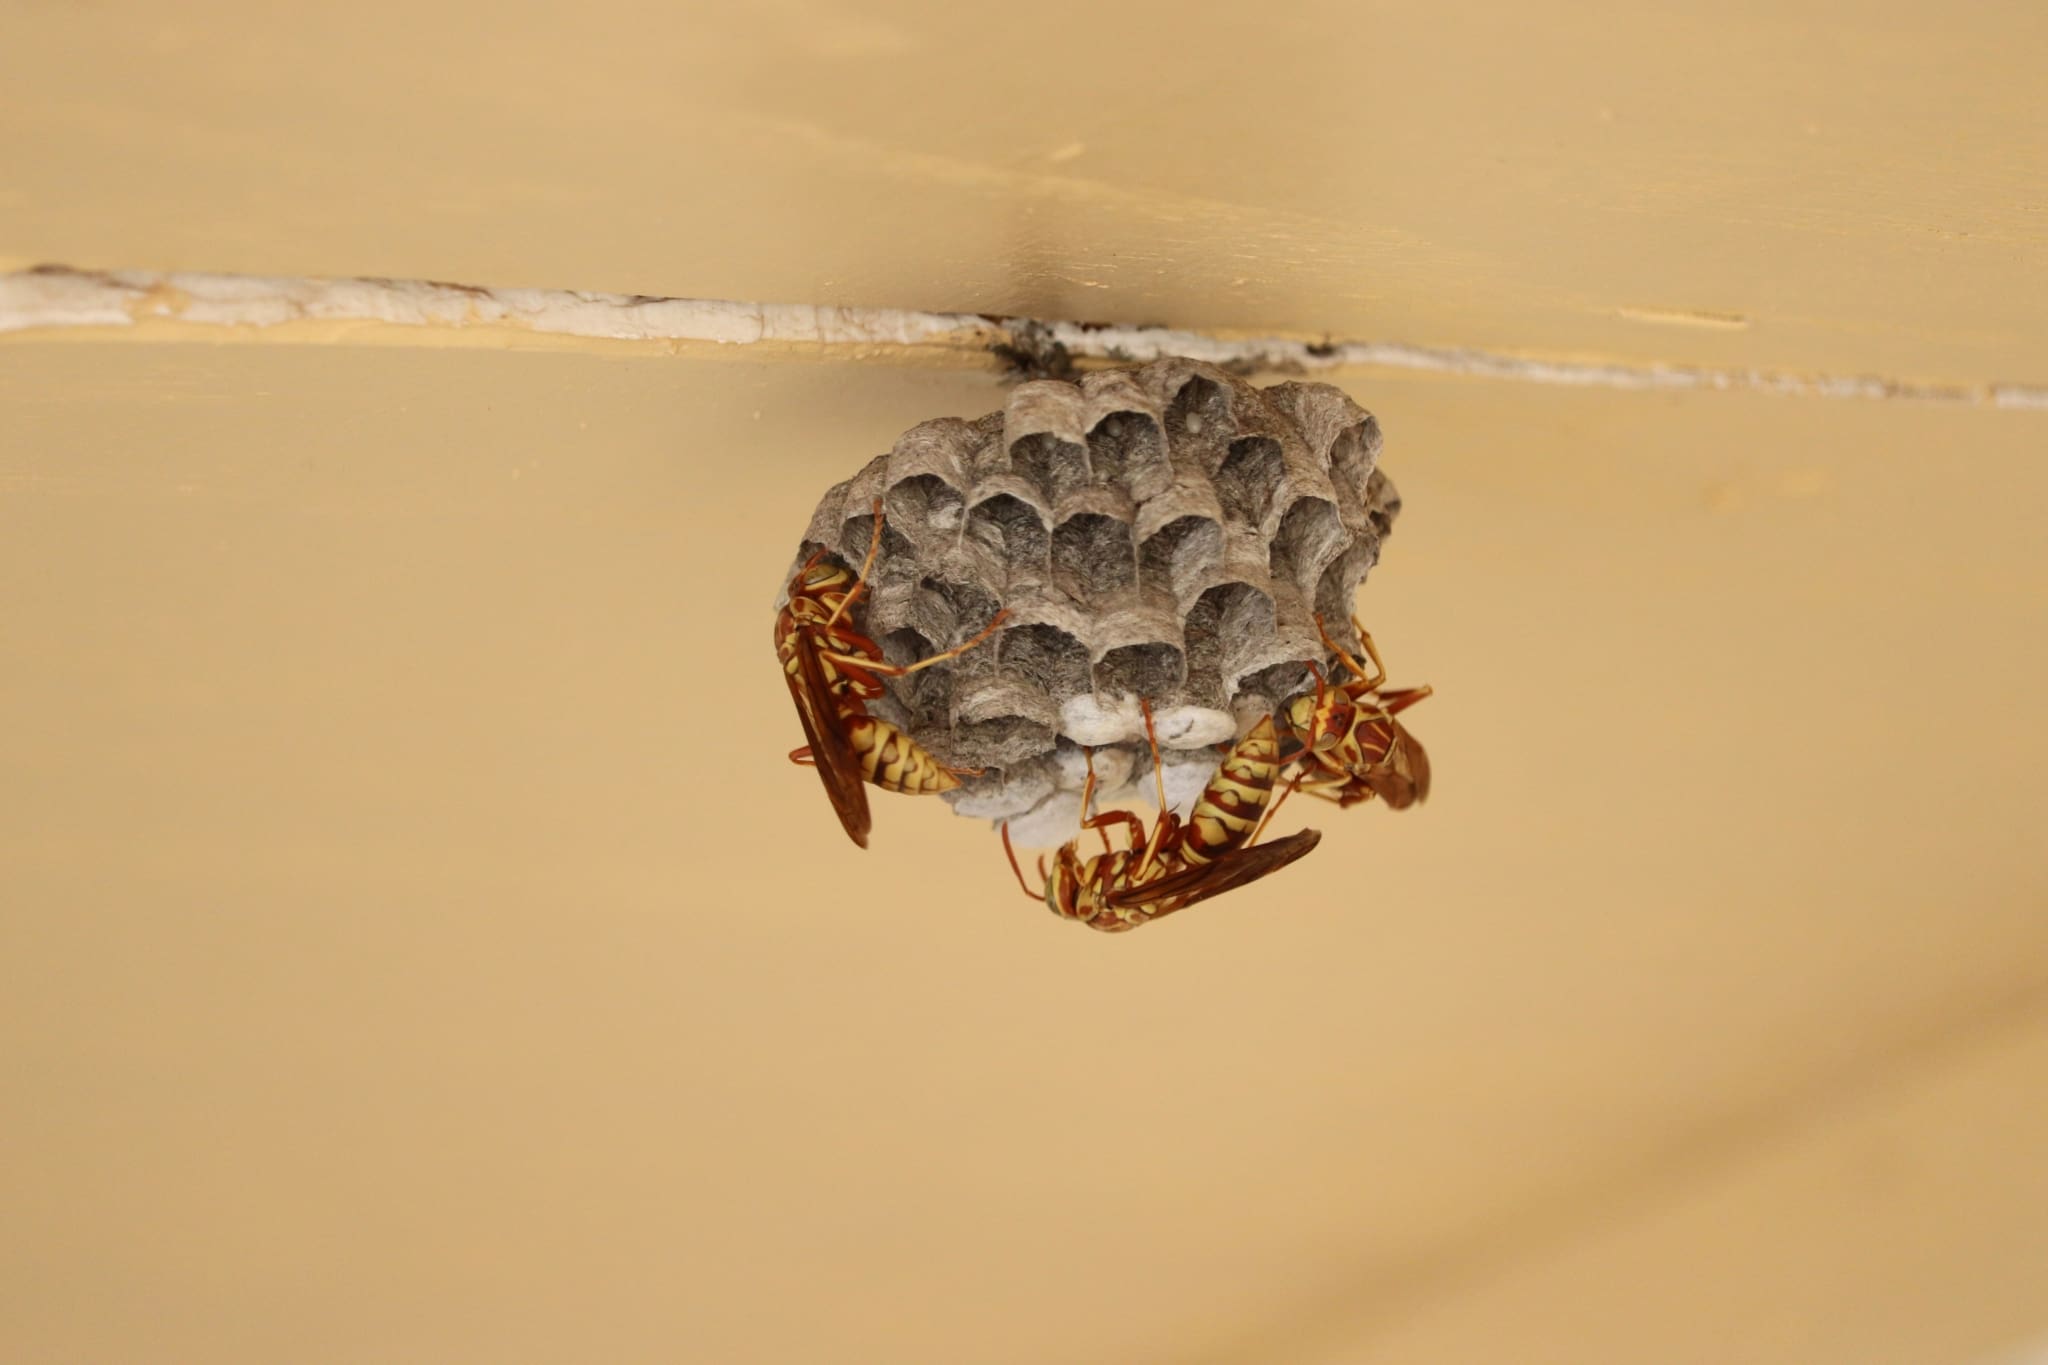 paper wasps nest